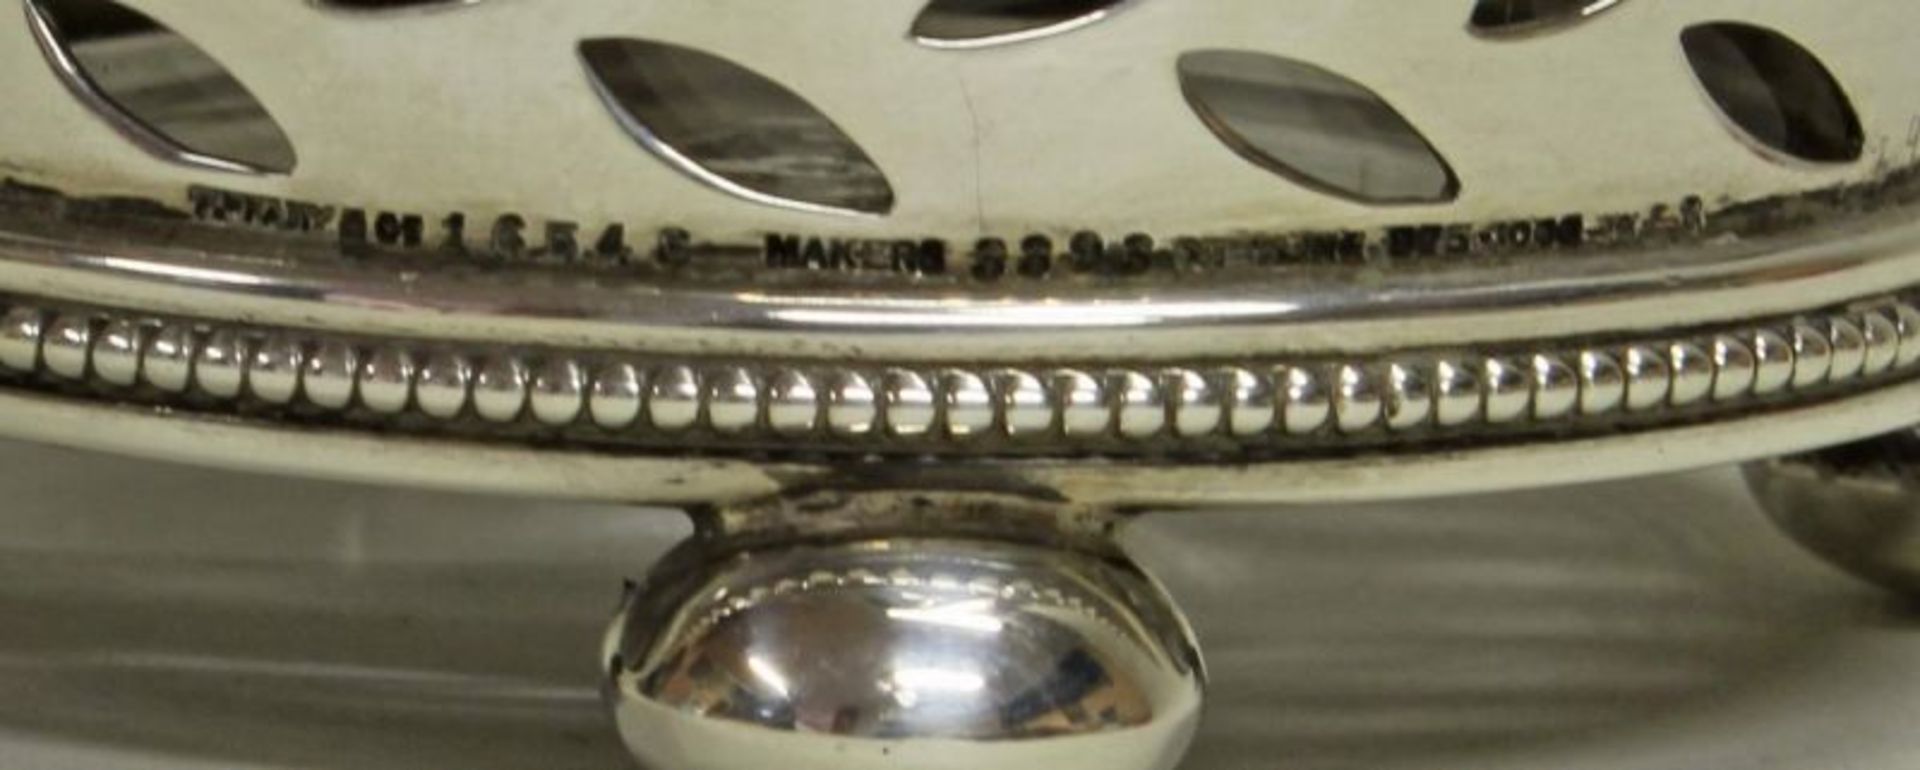 Zuckerstreuer, Silber 925, 20. Jh., schraubbarer Streukopf auf vergittertem Mantel, am Rand unten - Image 2 of 2